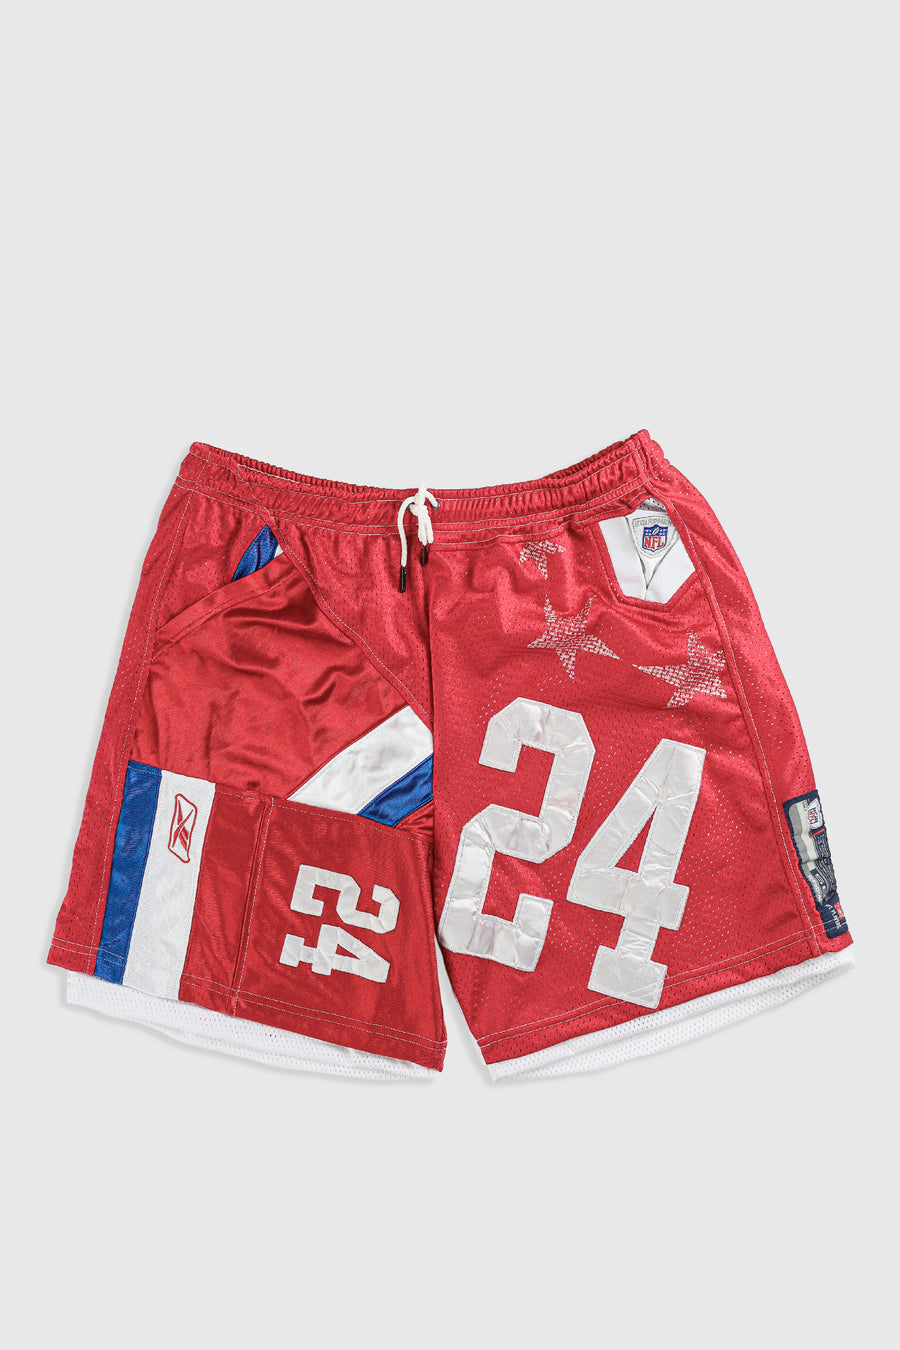 Unisex Rework Pro Bowl NFL Jersey Shorts - XL